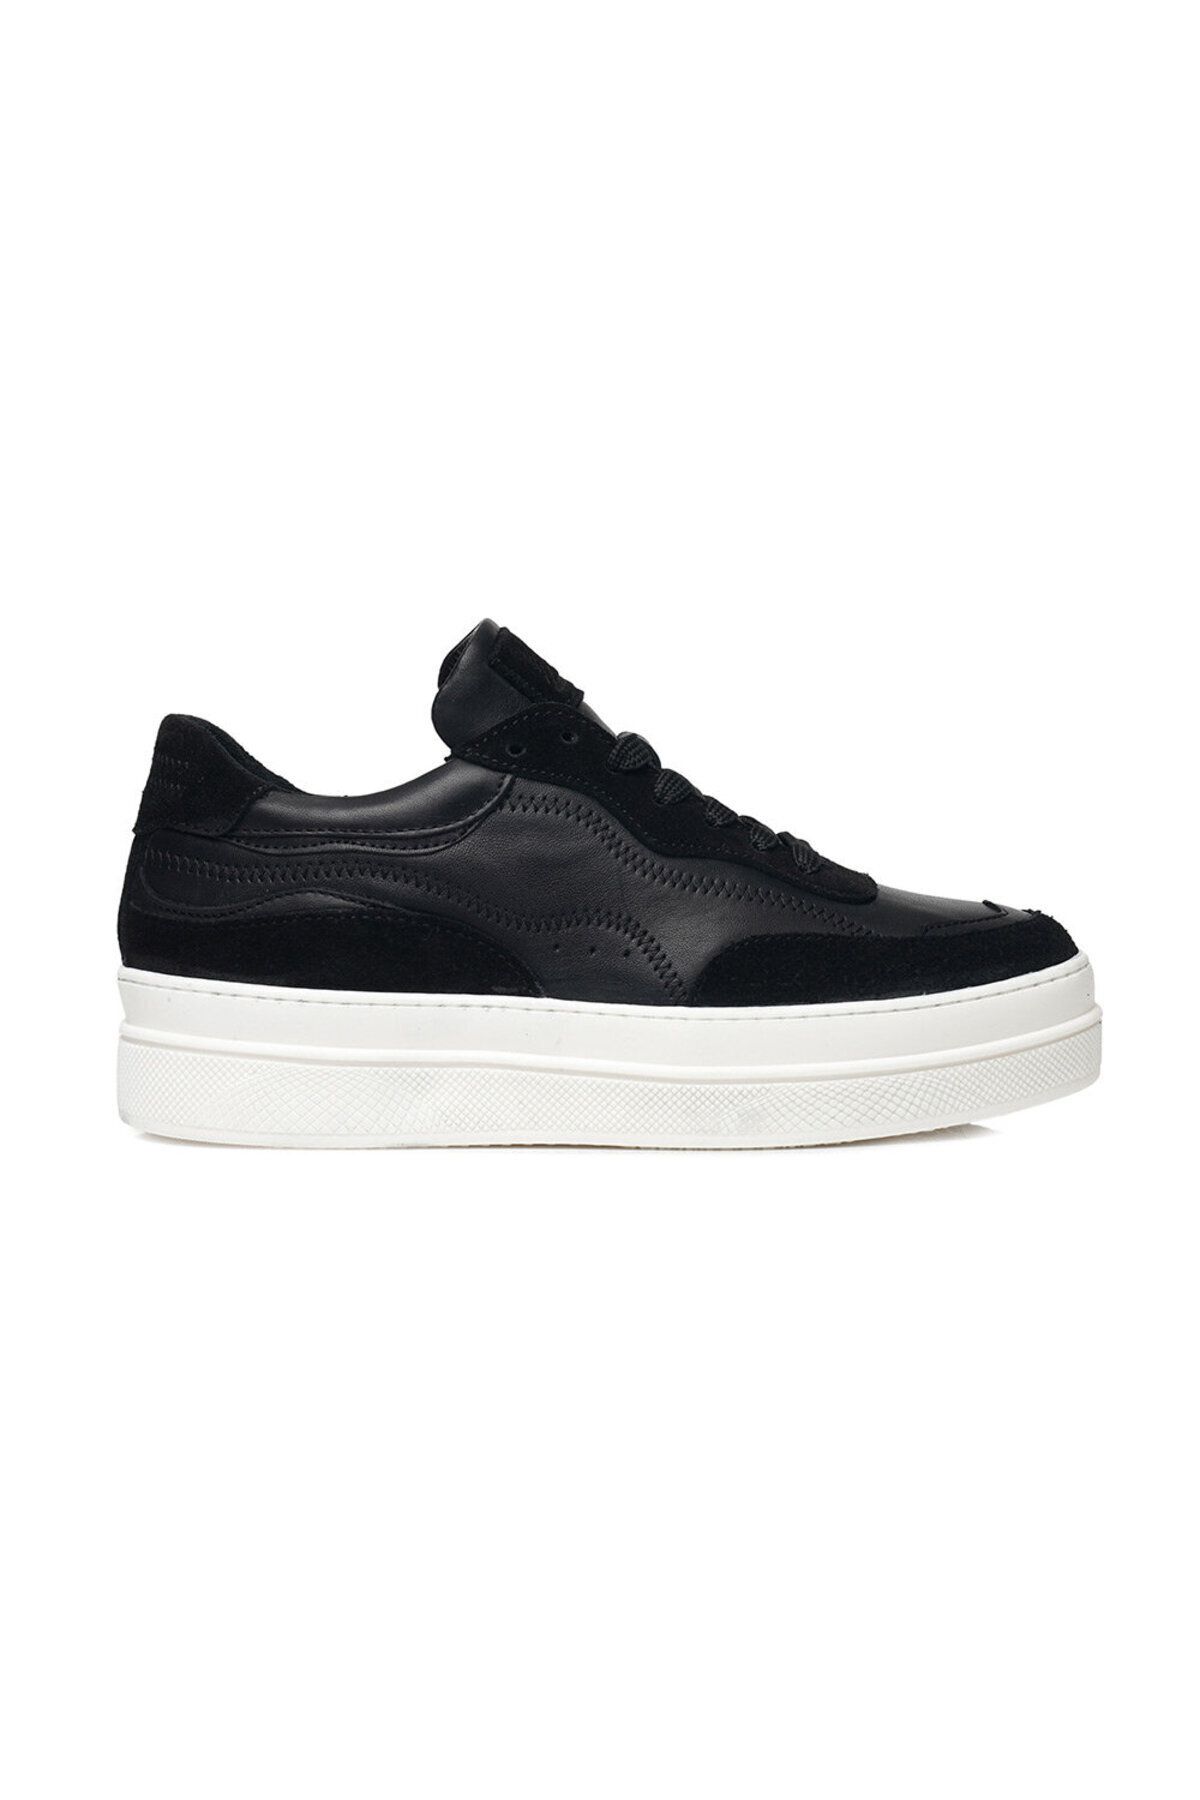 Greyder Kadın Siyah Hakiki Deri Sneaker Ayakkabı 3k2sa33071